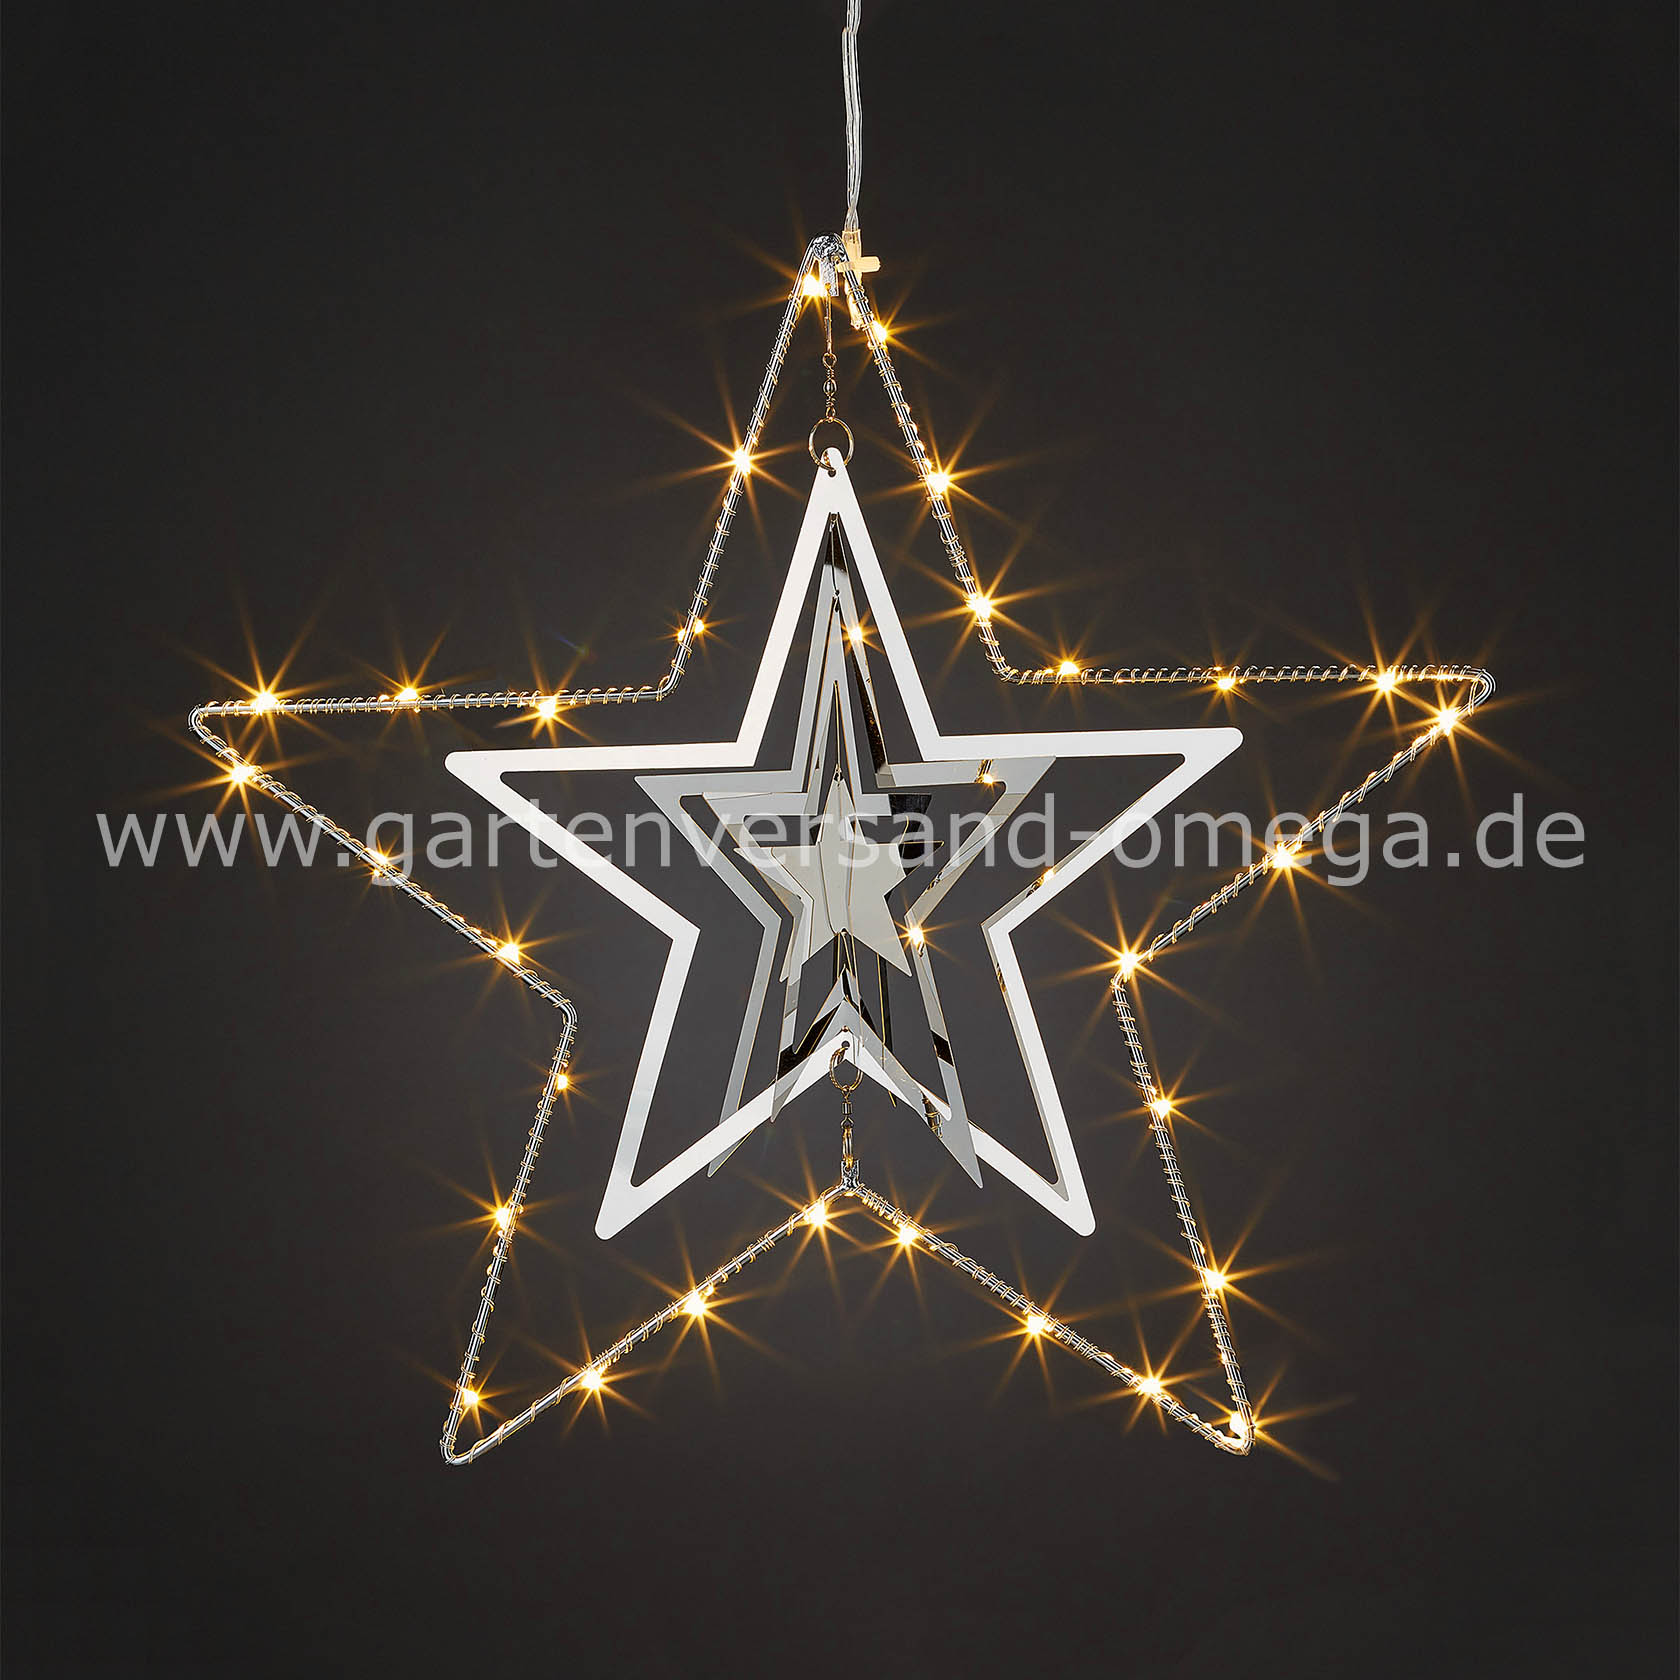 Deko-Weihnachtsstern Hängen, Stern-Mobilee, Weihnachtsstern, zum - Metall-Stern Innen, LED Weihnachtsdeko für Metall, Weihnachtsbeleuchtung LED-Stern, Stern beleuchtet, 3D Weihnachtsbeleuchtung LED-Mobilee, aus